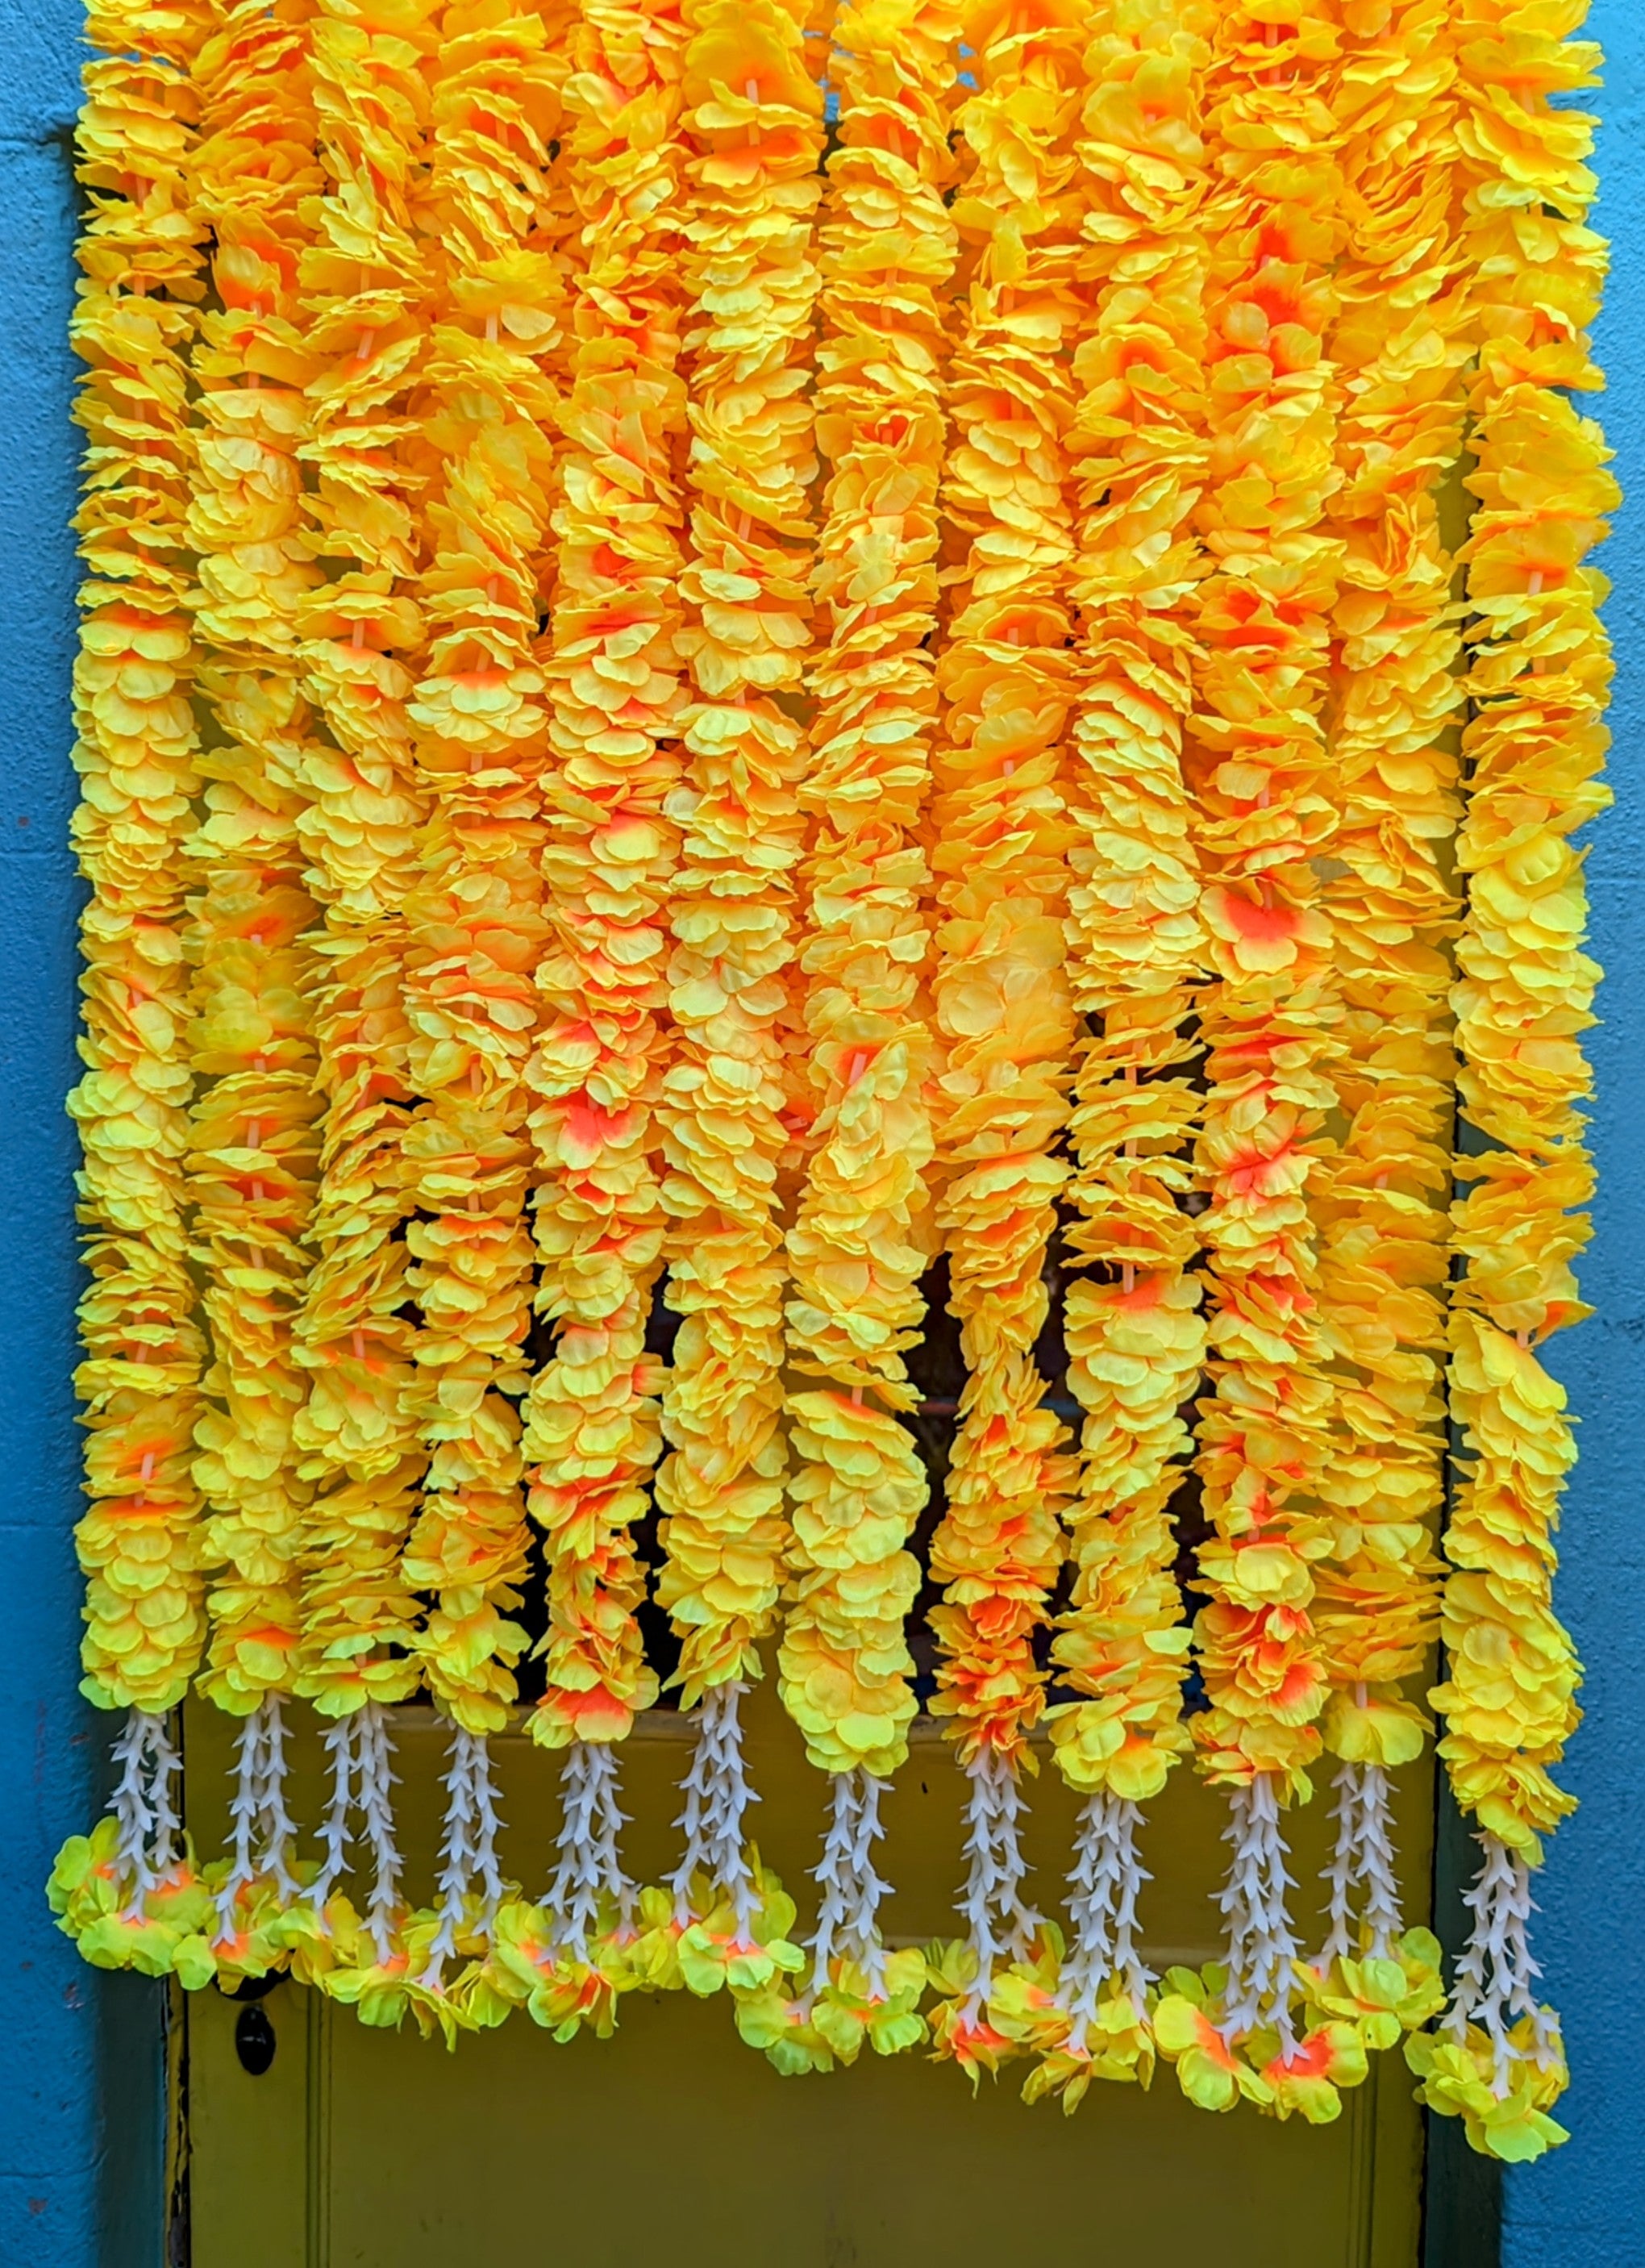 Pastel Flower garlands